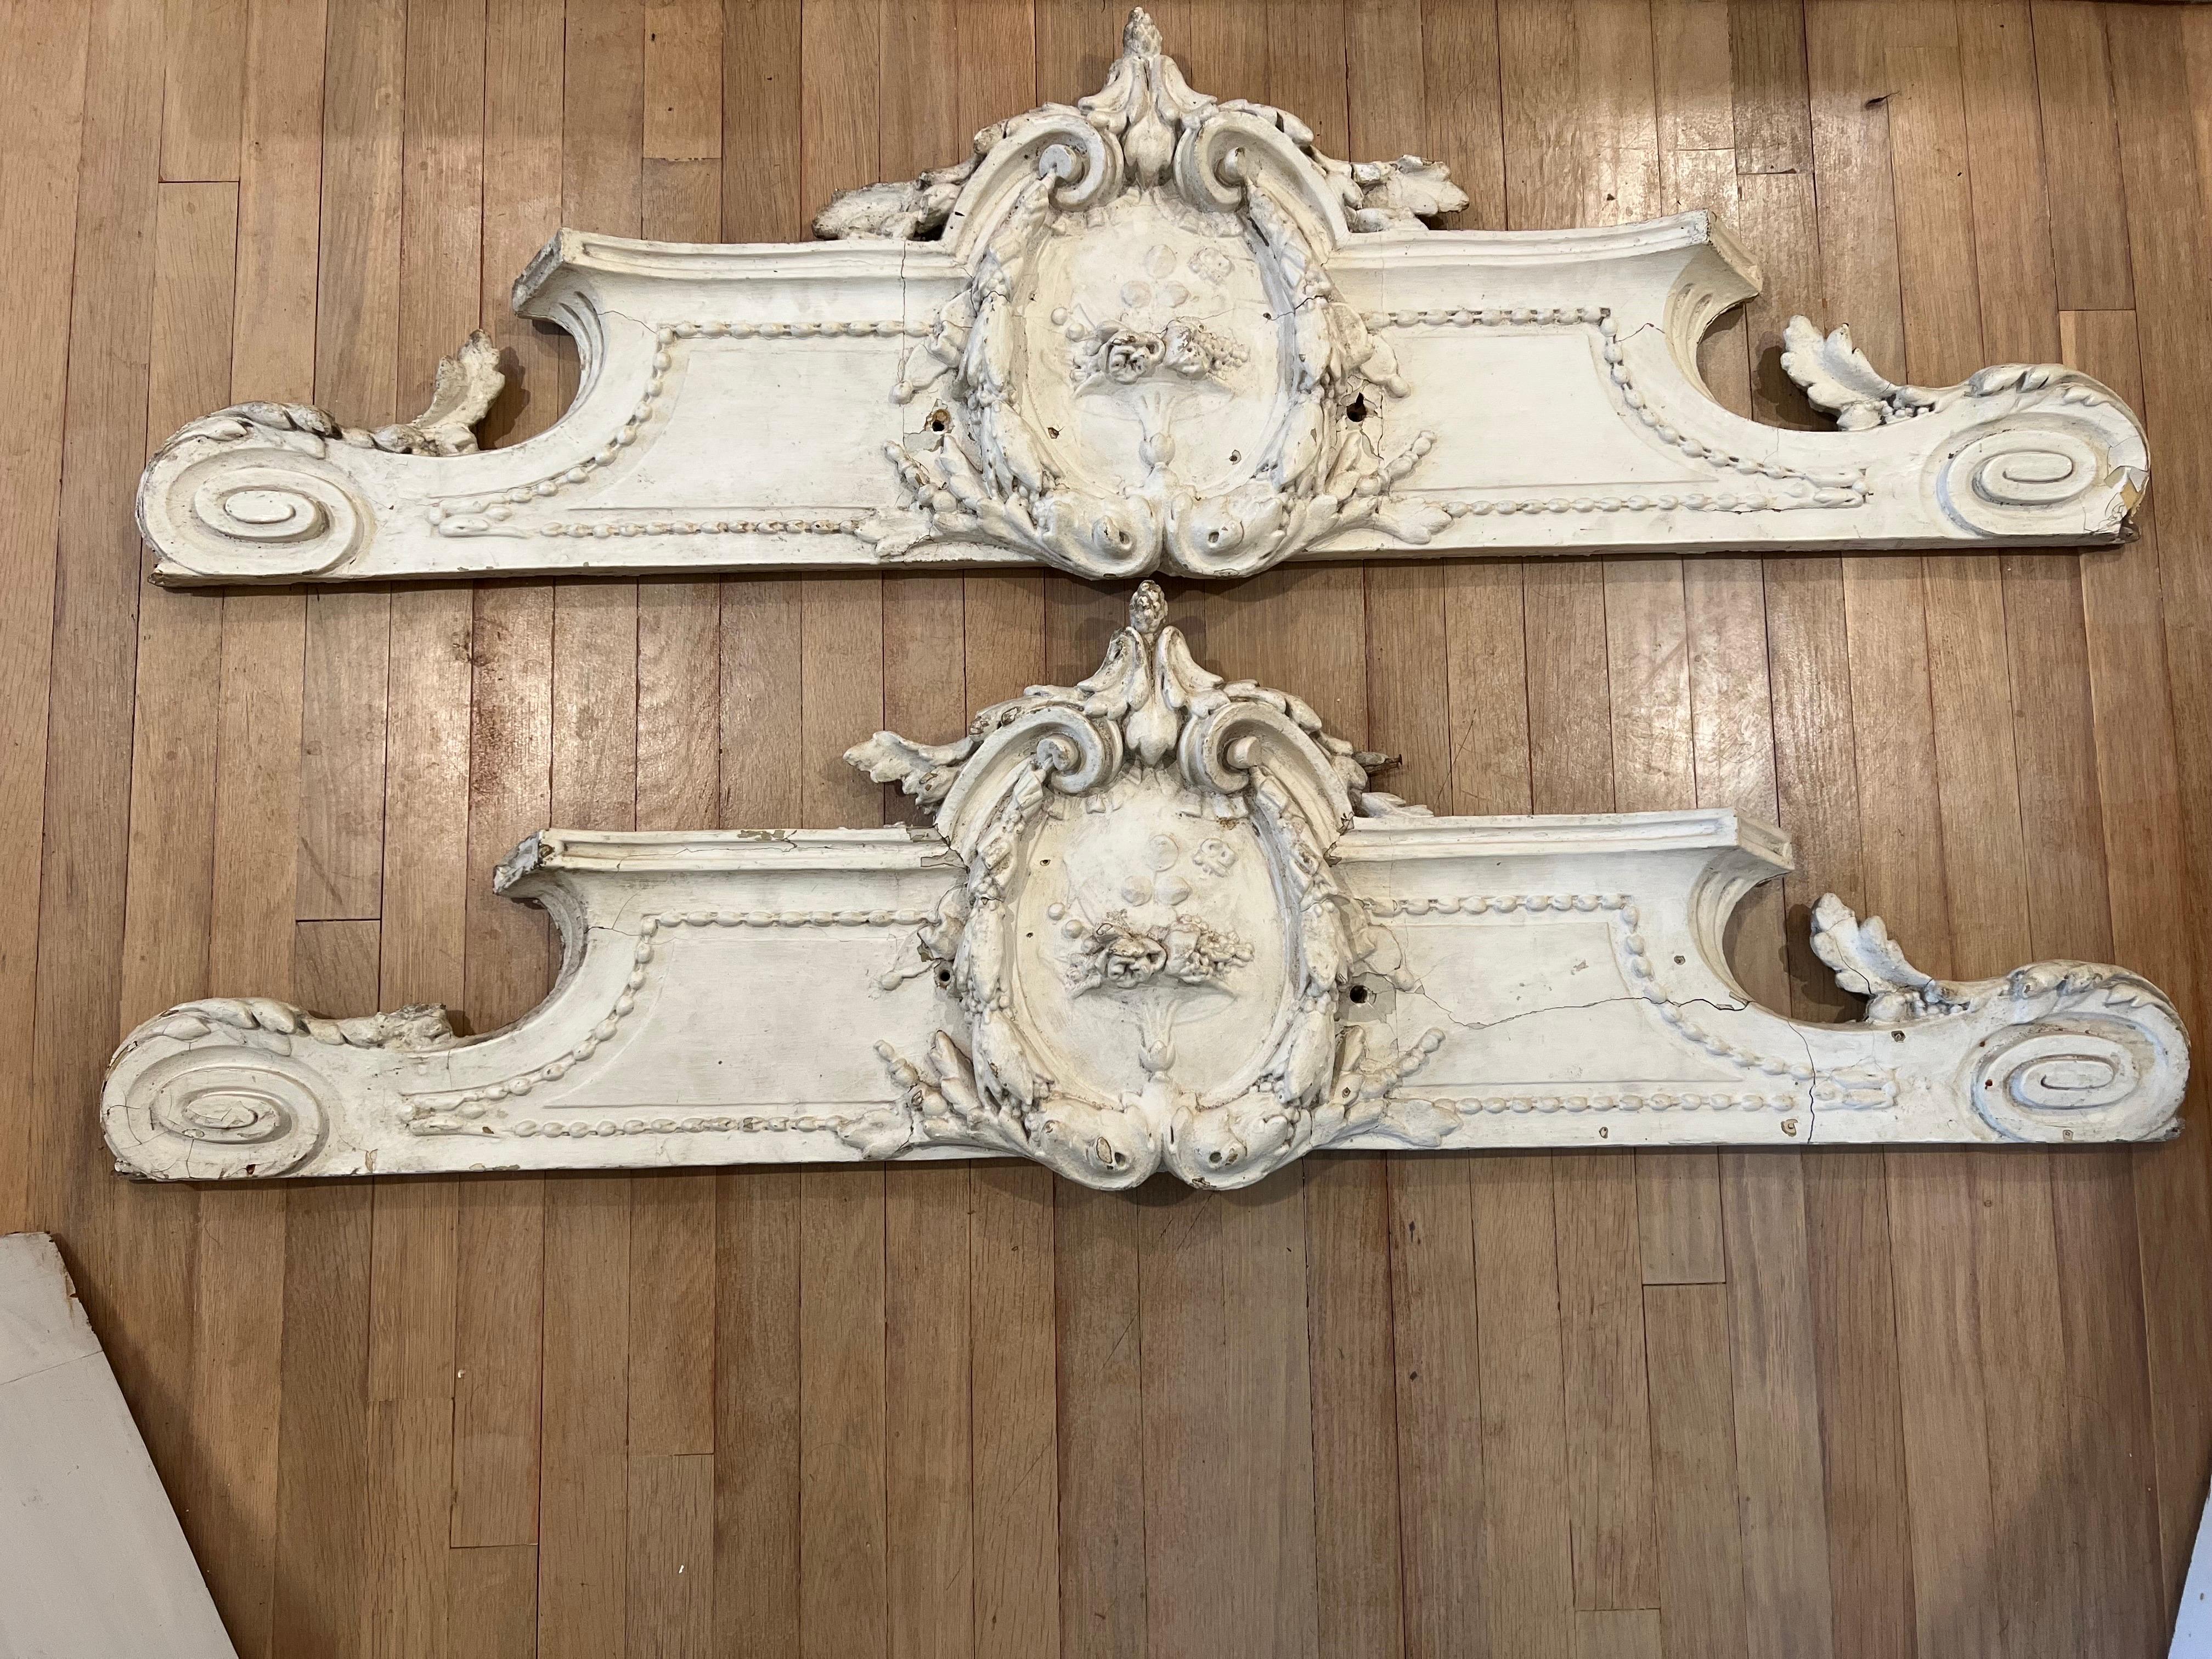 Magnifique paire de frontons français sculptés à l'ancienne, patinés en blanc crème.  
Peut être utilisé sur le mur comme relief ou au-dessus d'une porte pour ajouter de l'intérêt.  

Voir les images pour l'état.  Ils sont anciens et présentent des